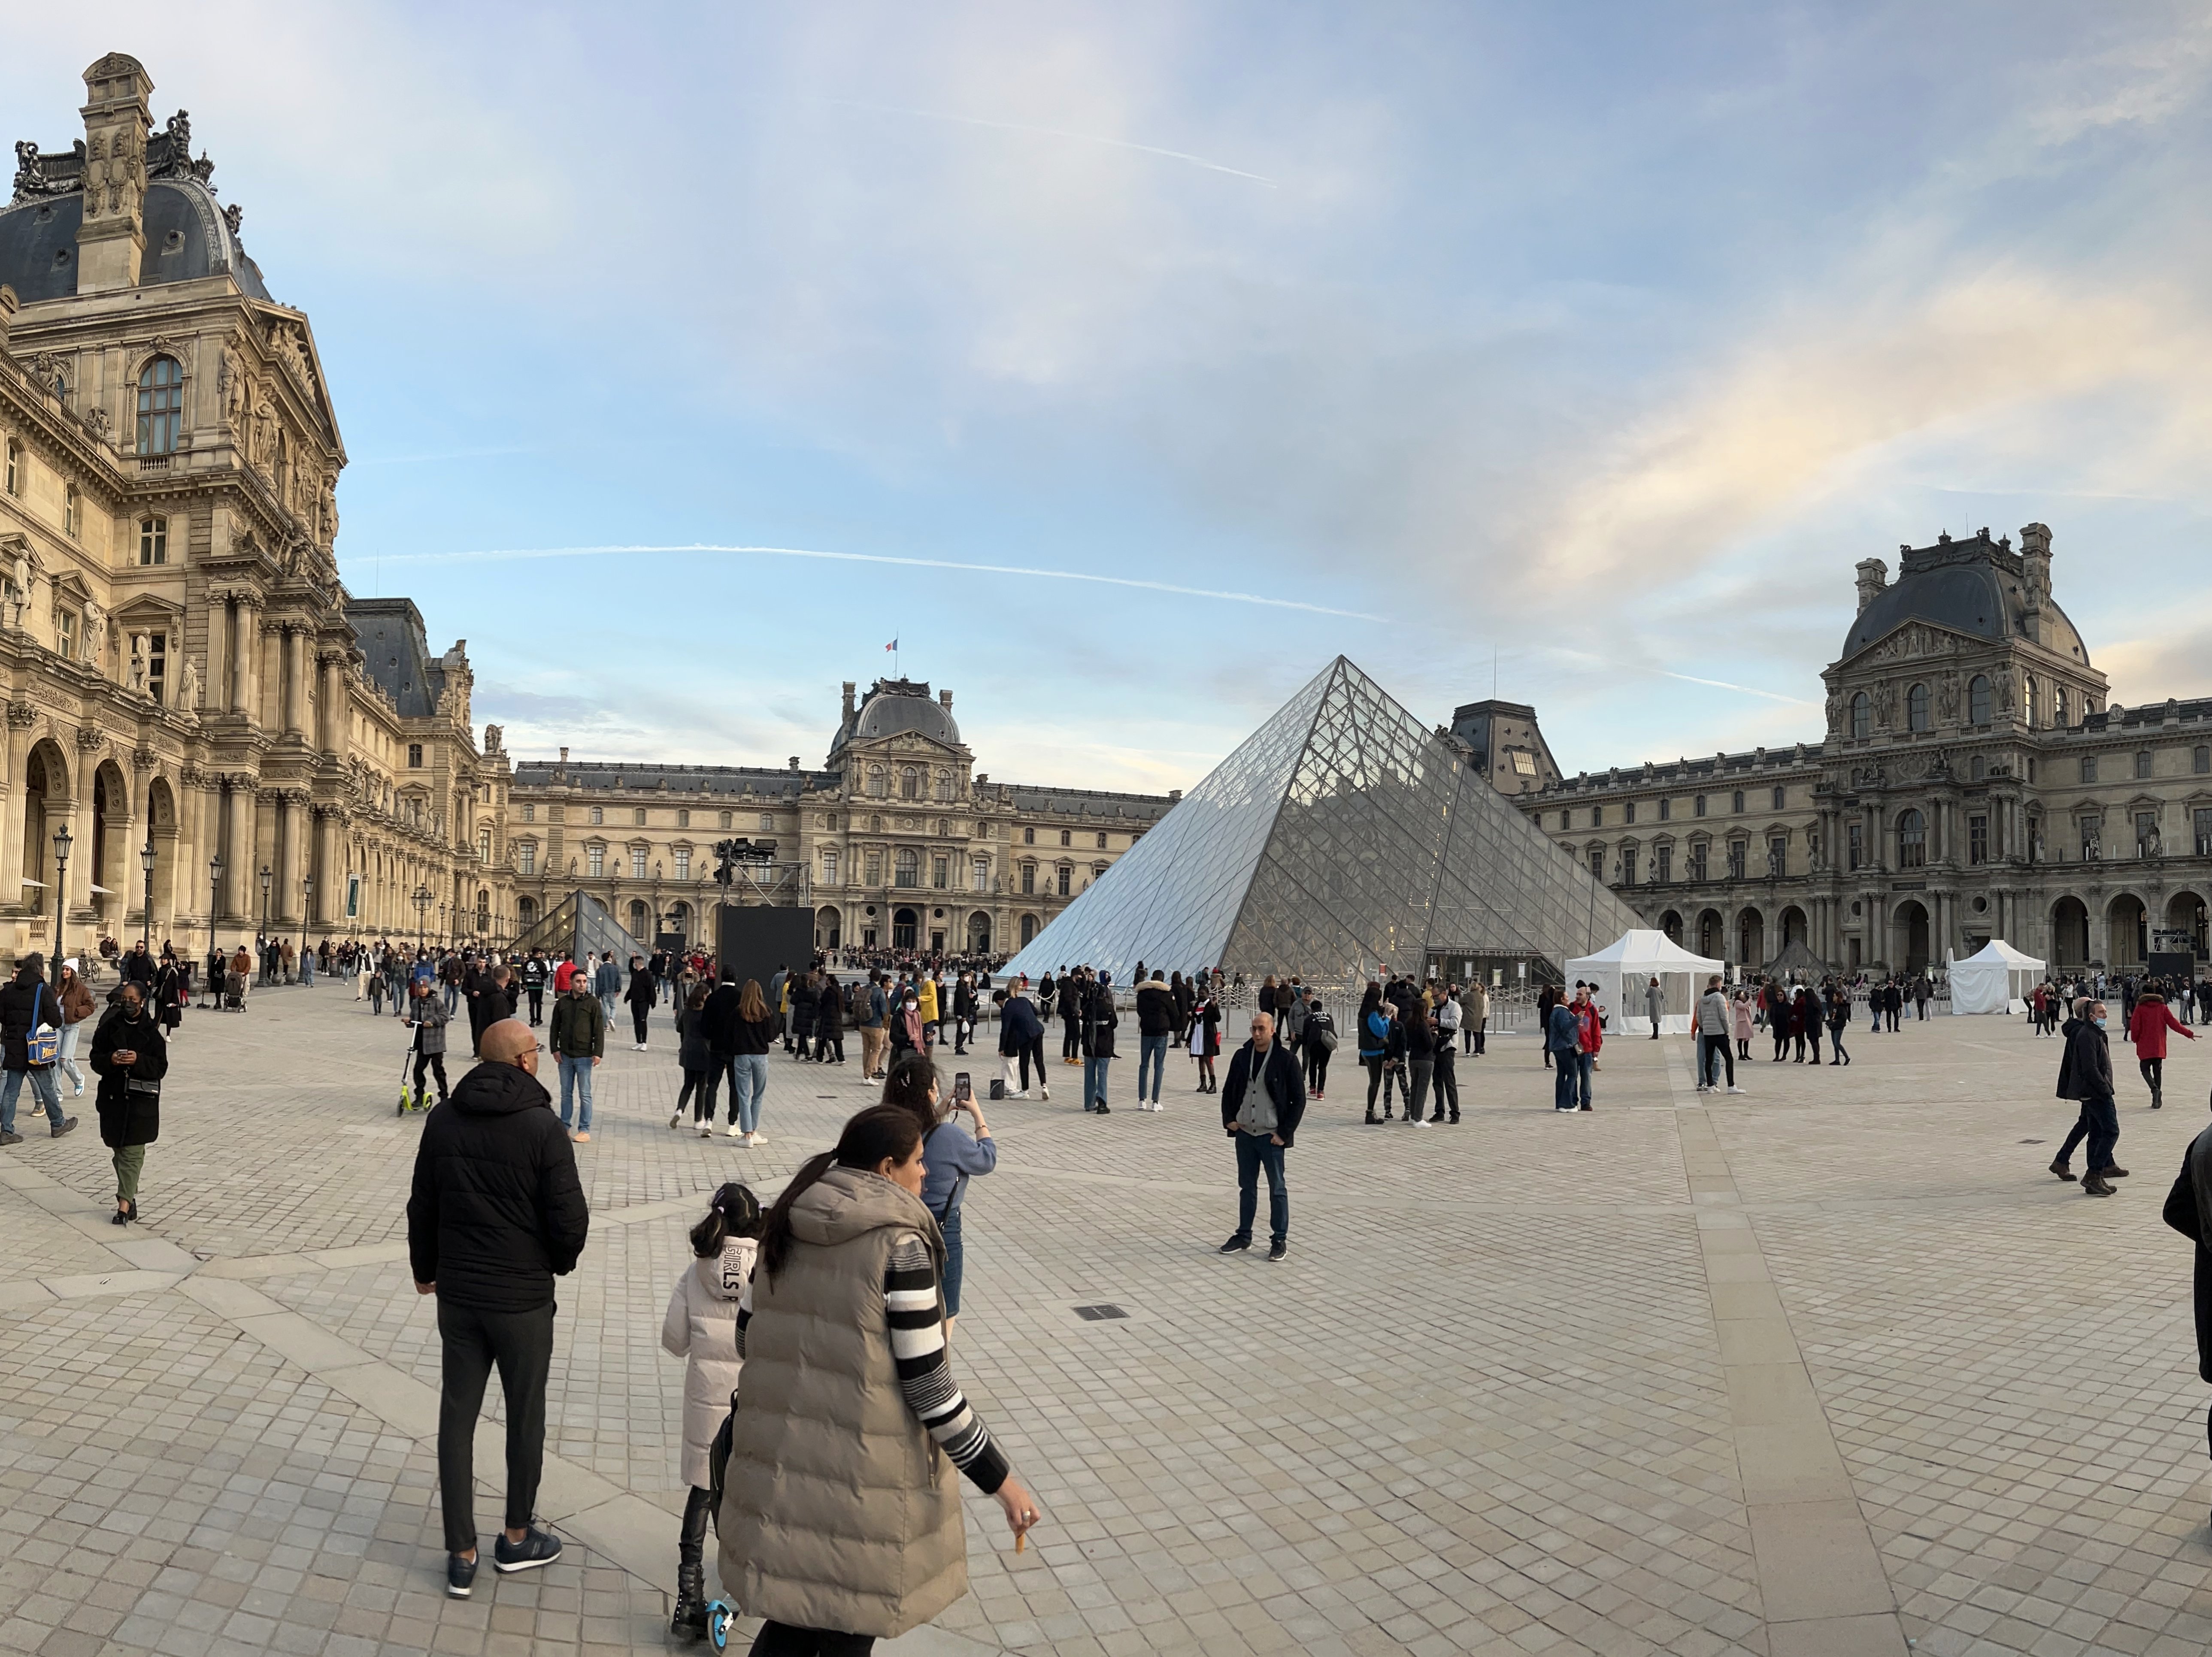 Glaspyramide vor dem Louvre